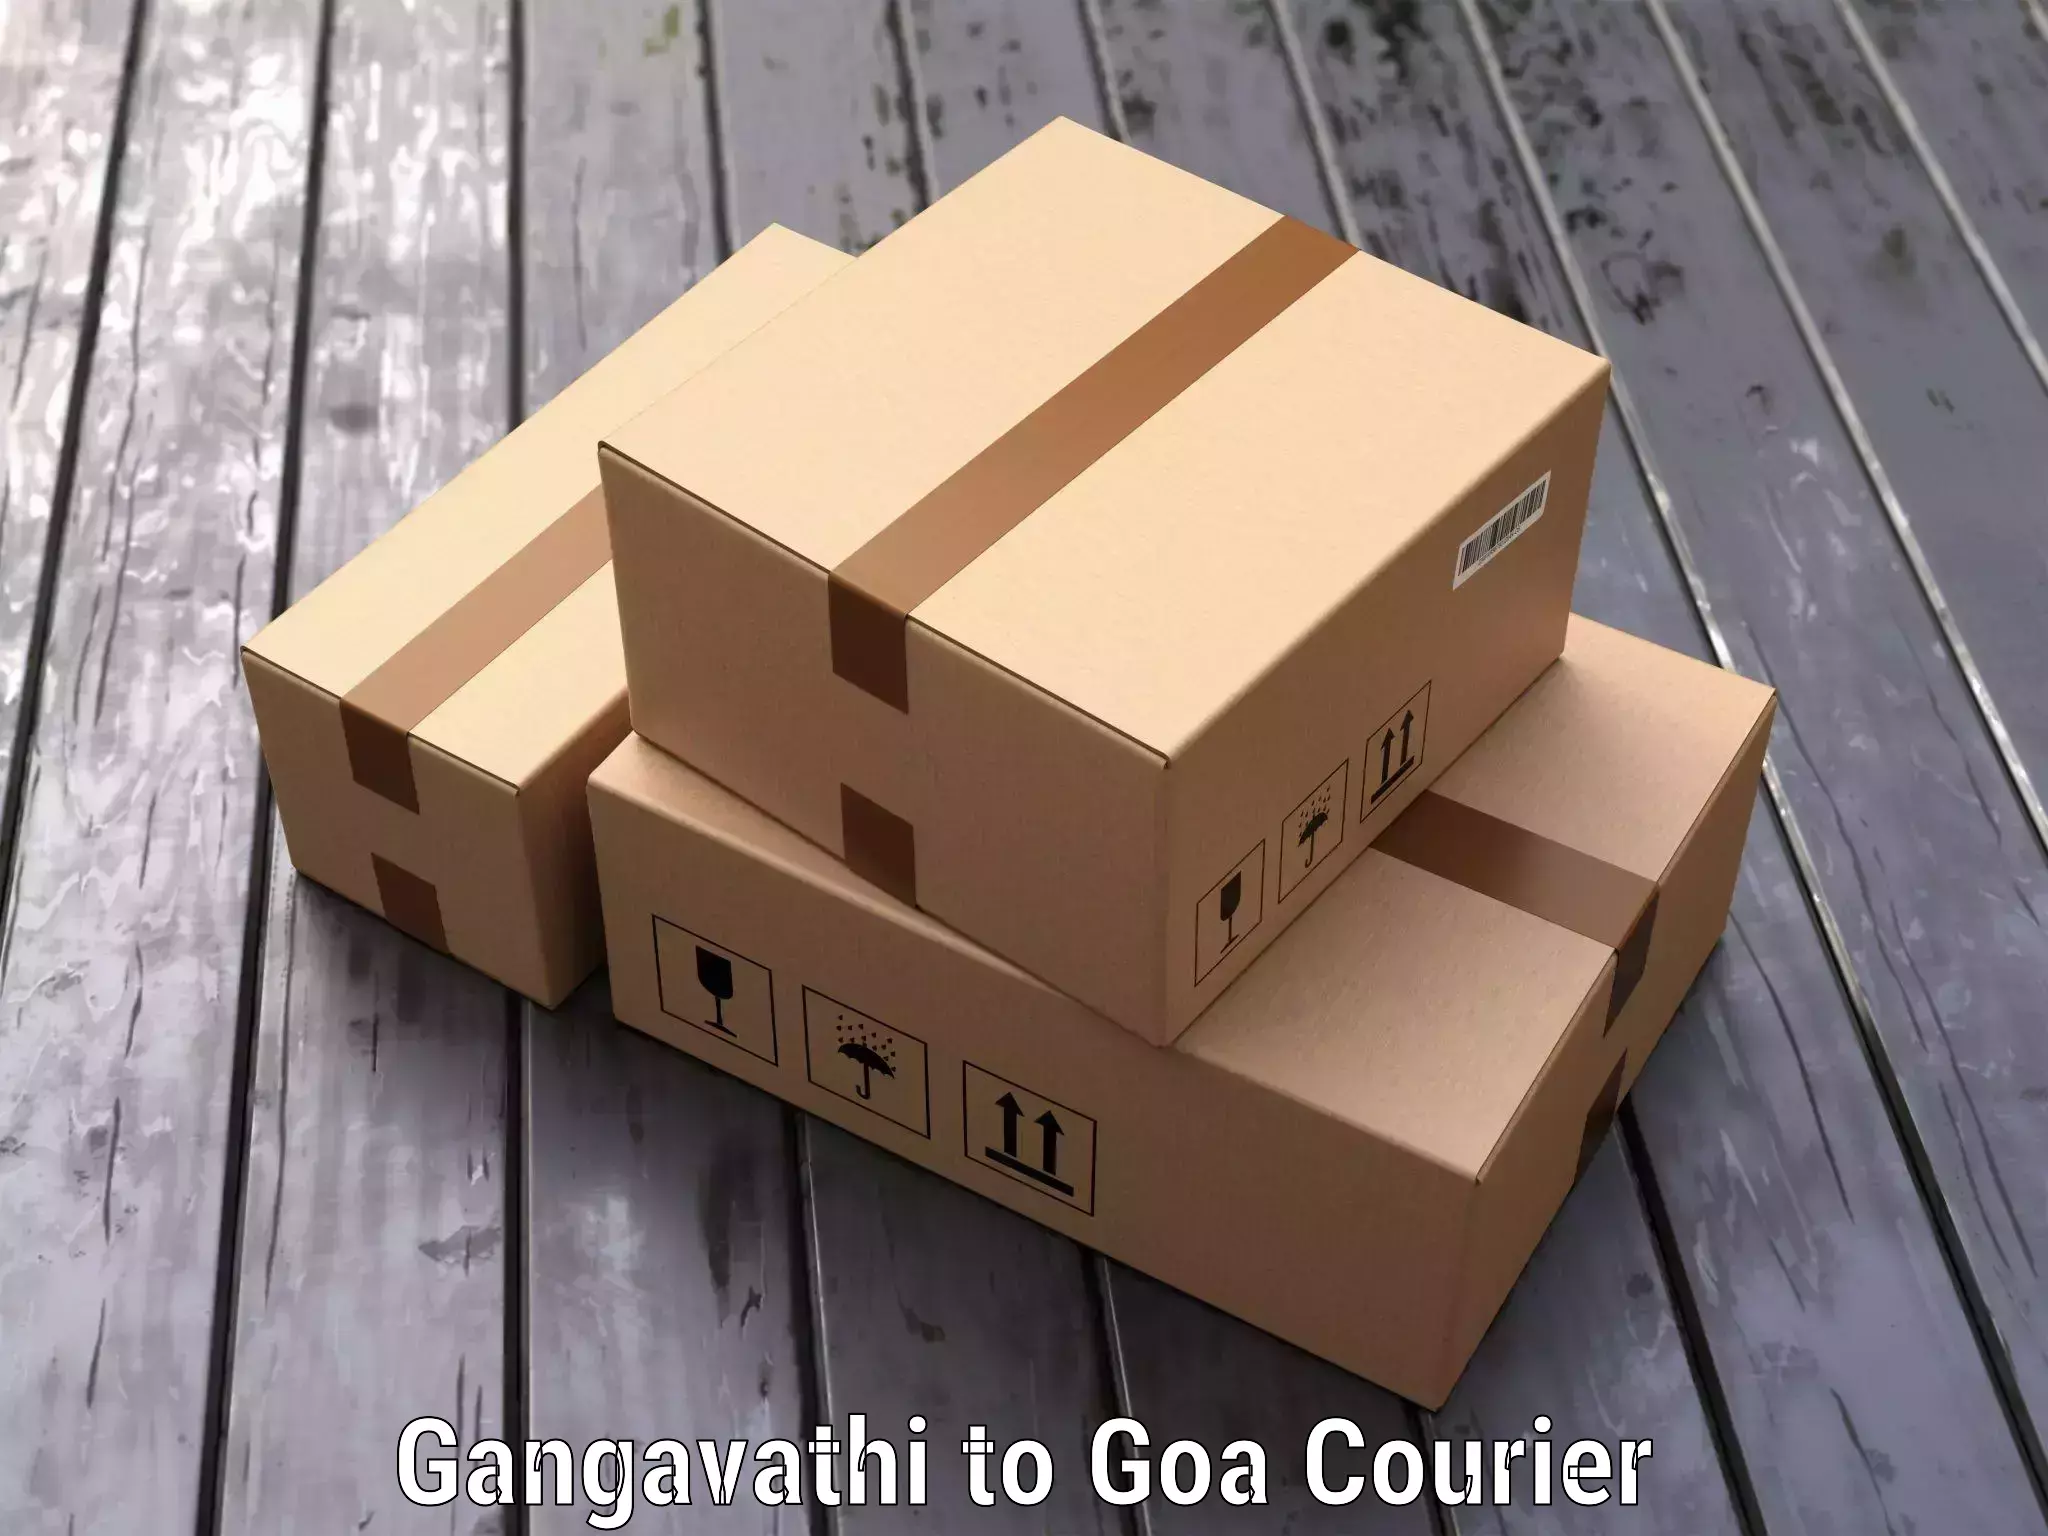 Baggage transport professionals Gangavathi to Goa